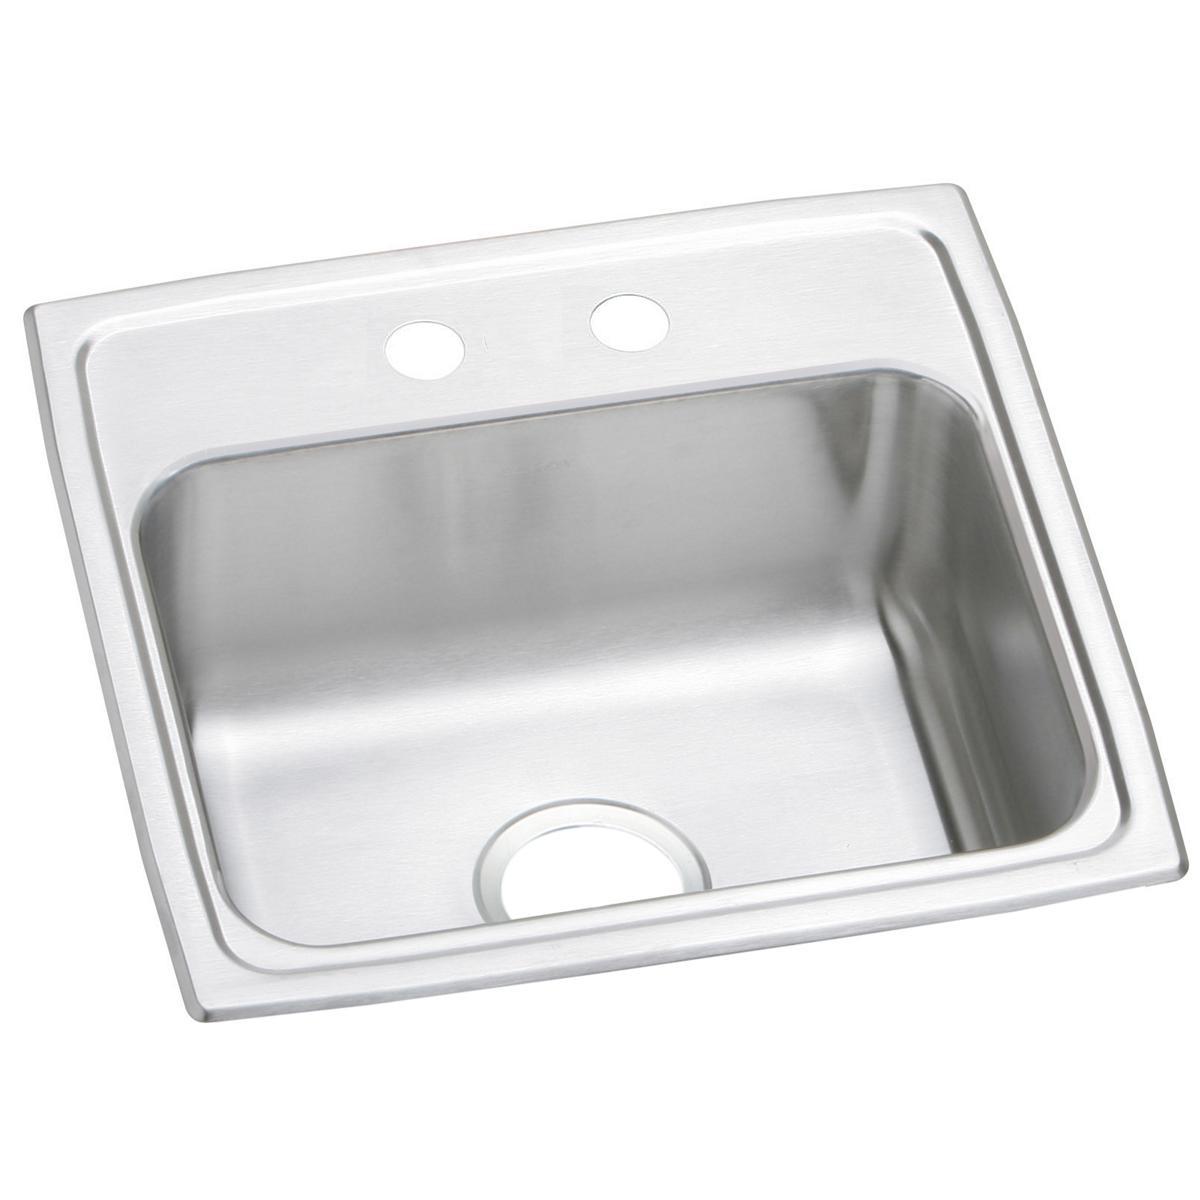 Elkay Celebrity 19" x 18" x 7-1/8" Stainless Steel Single Bowl Drop-in Sink